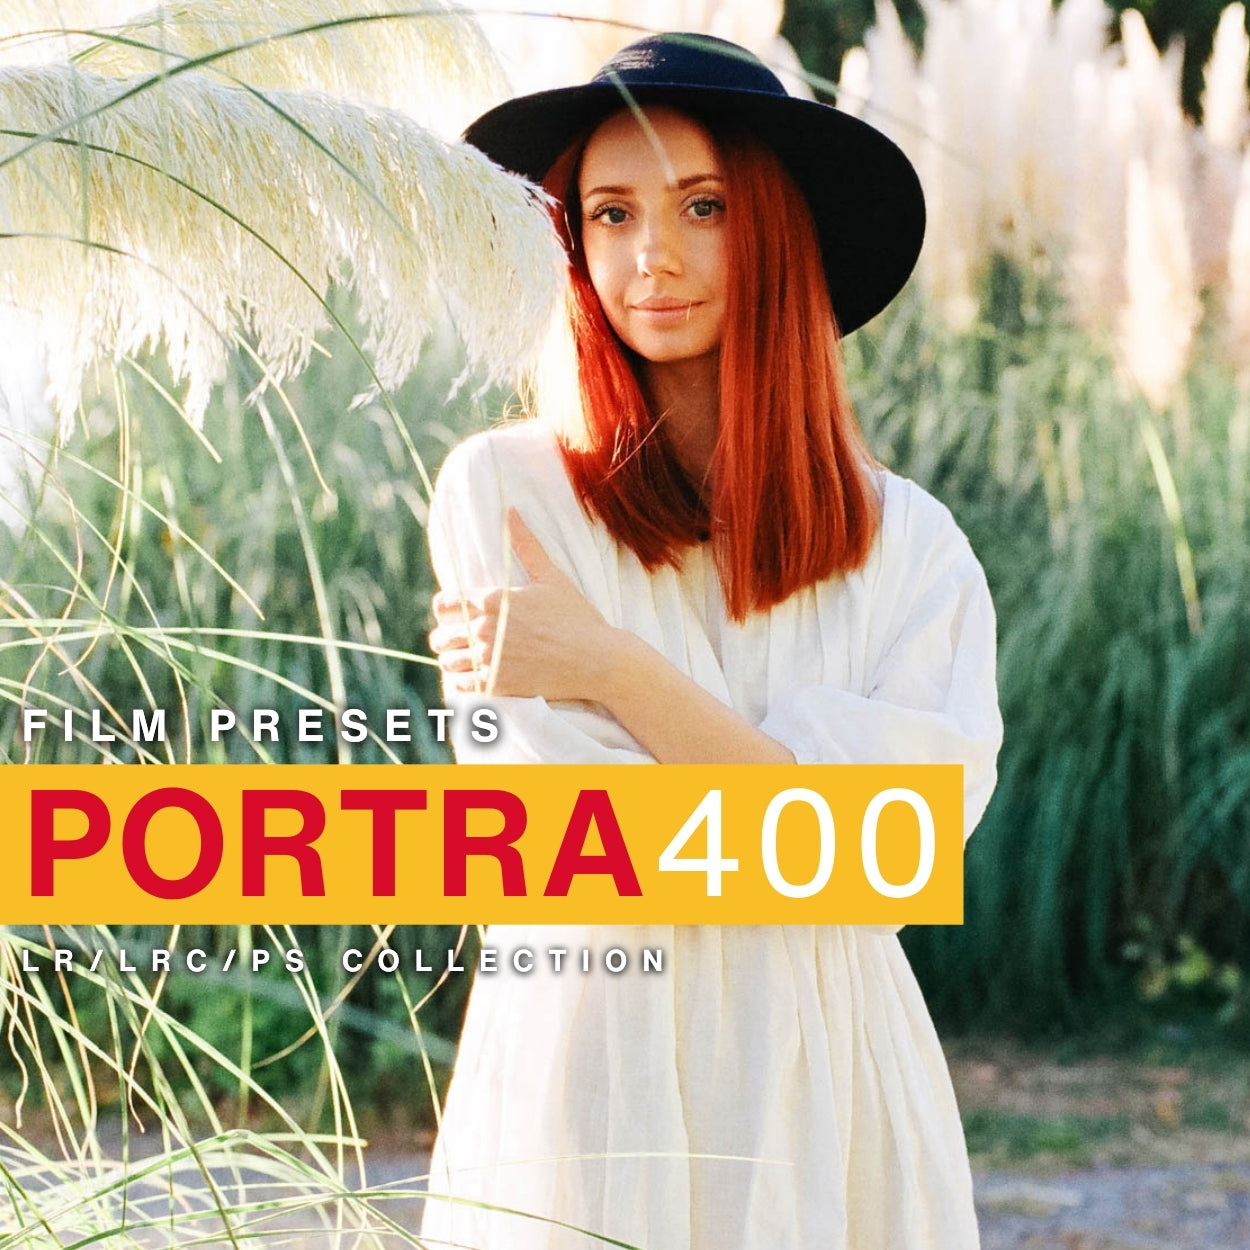 Kodak Portra 400 Film Filter Lightroom Presets For Adobe Lightroom Mobile & Desktop By Lou And Marks Presets analog